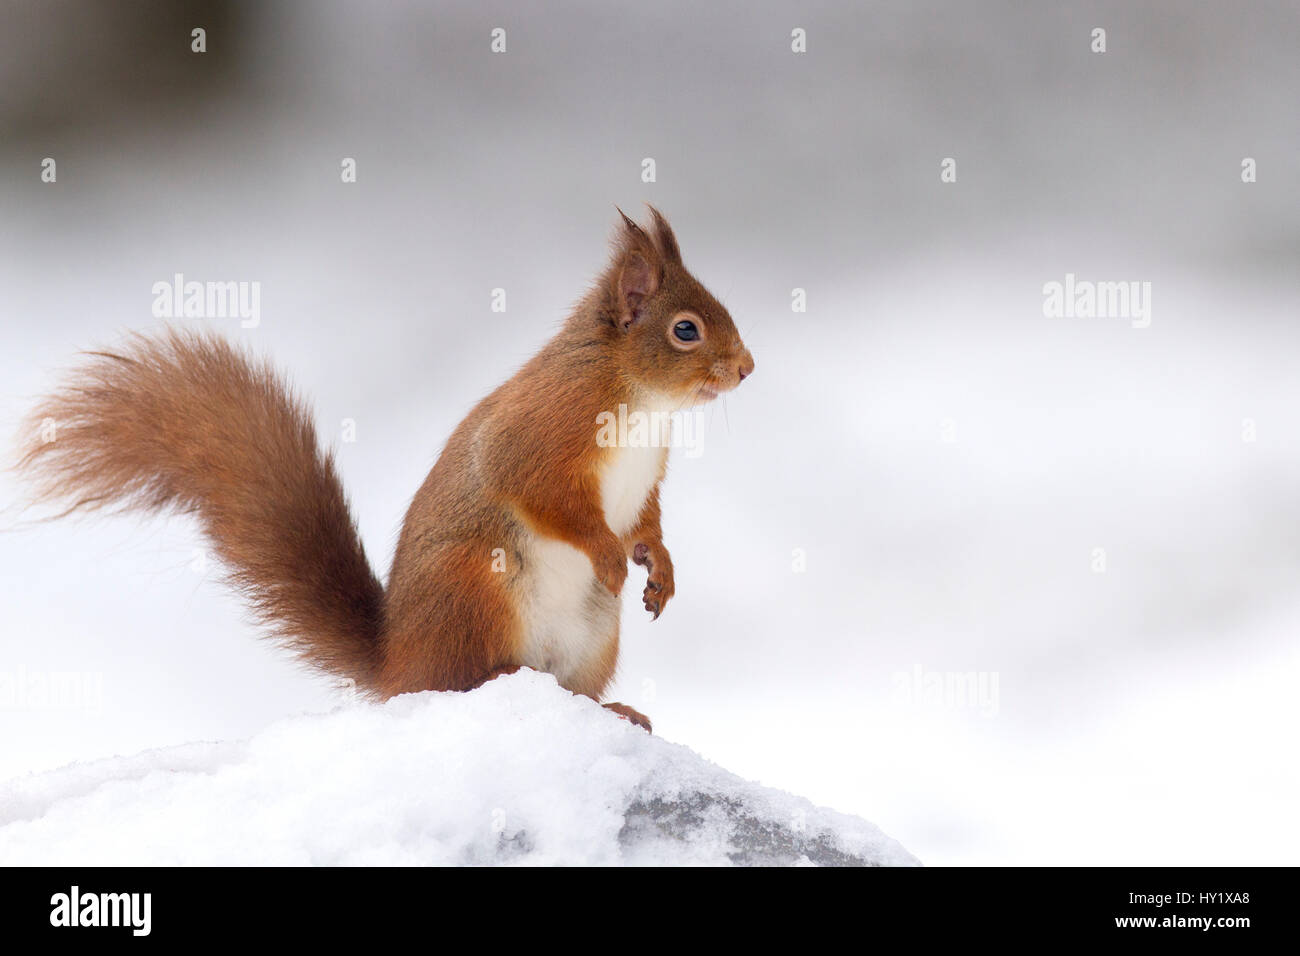 Eichhörnchen (Sciurus Vulgaris) auf Log im Schnee stehen. Schottland, Großbritannien. Dezember. Stockfoto